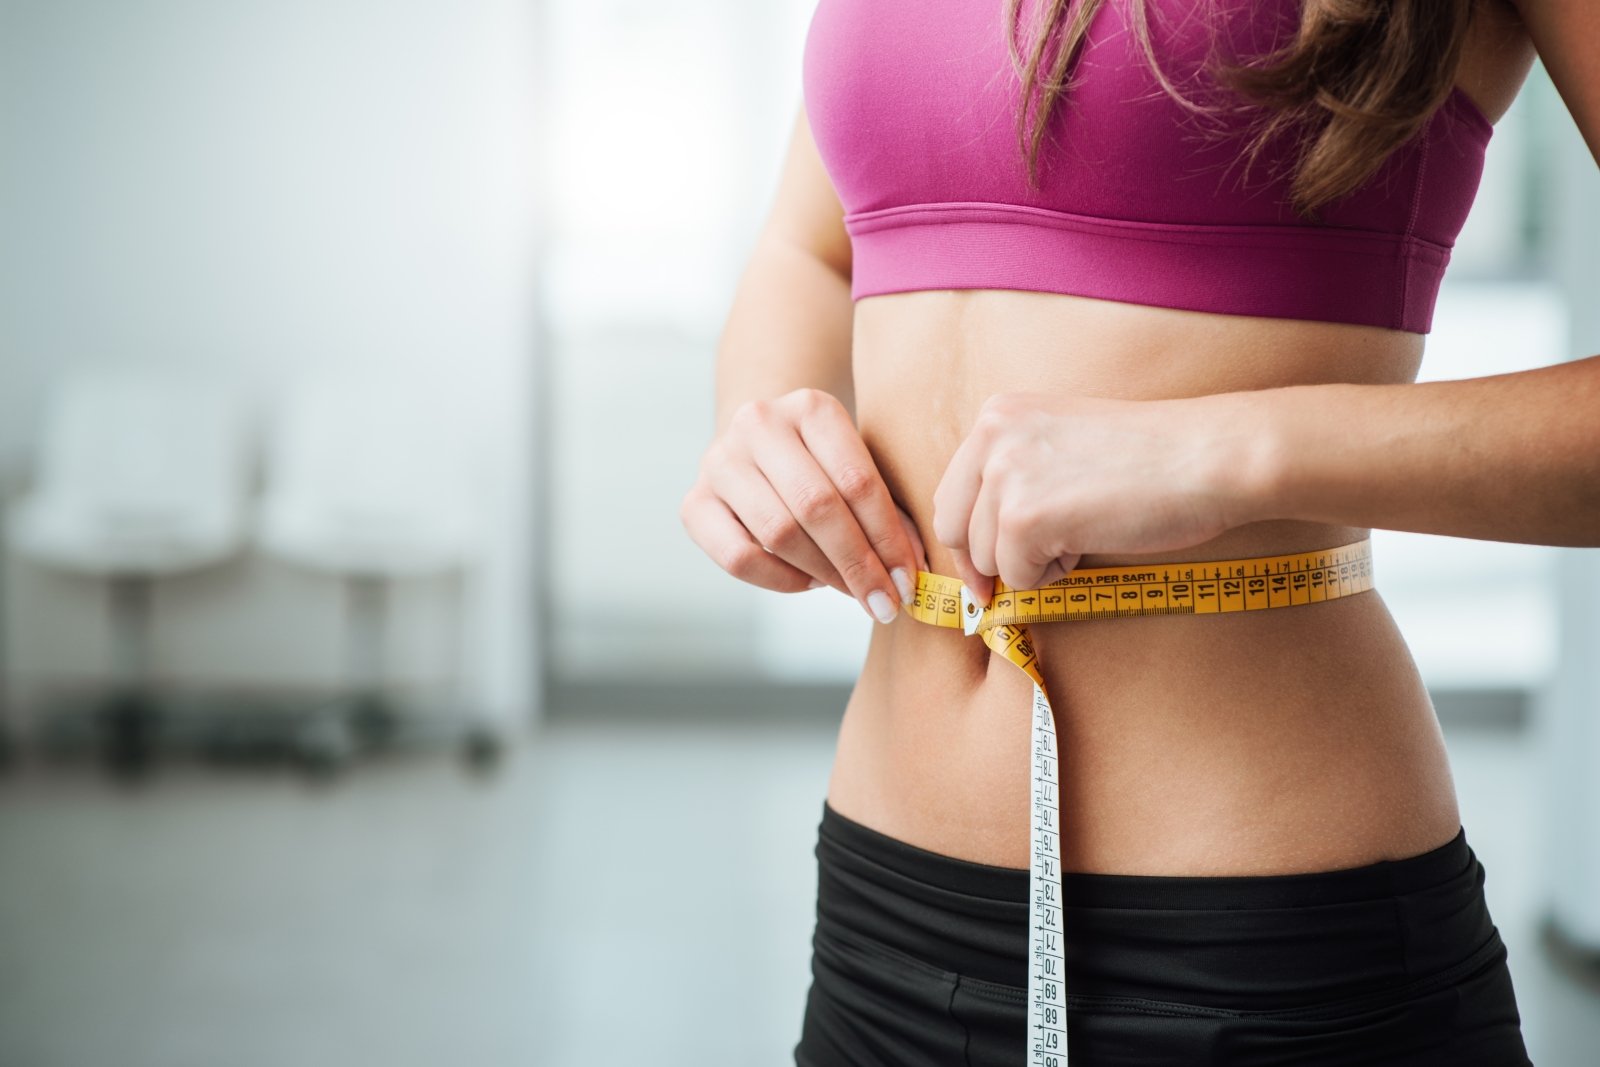 patarimai mesti svorį ir pilvo riebalus kaip numesti svorio vyriausybė